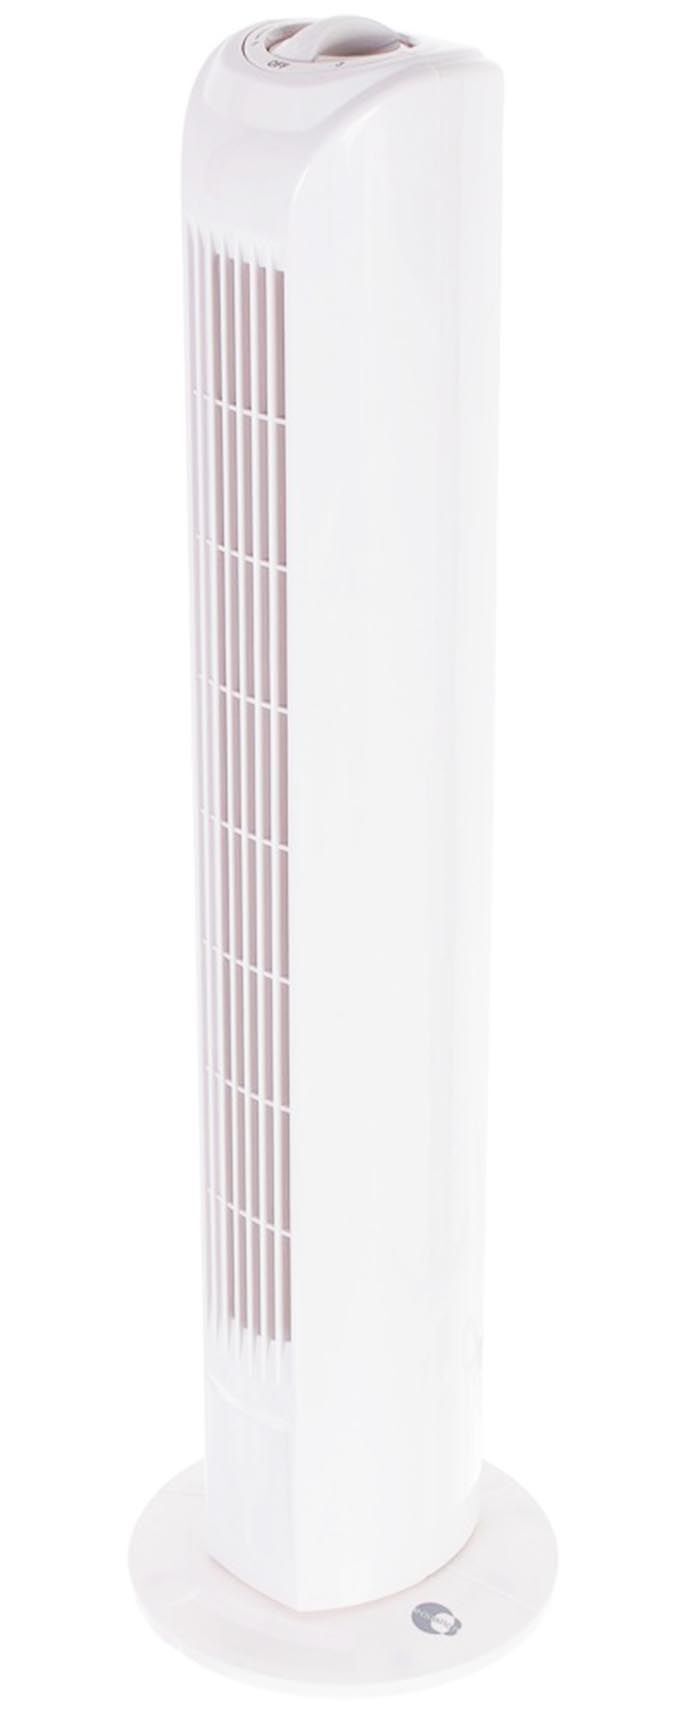 EQUATION Товер вентилятор напольный белый 45Вт / EQUATION Tower вентилятор-башня колонный белый 45Вт